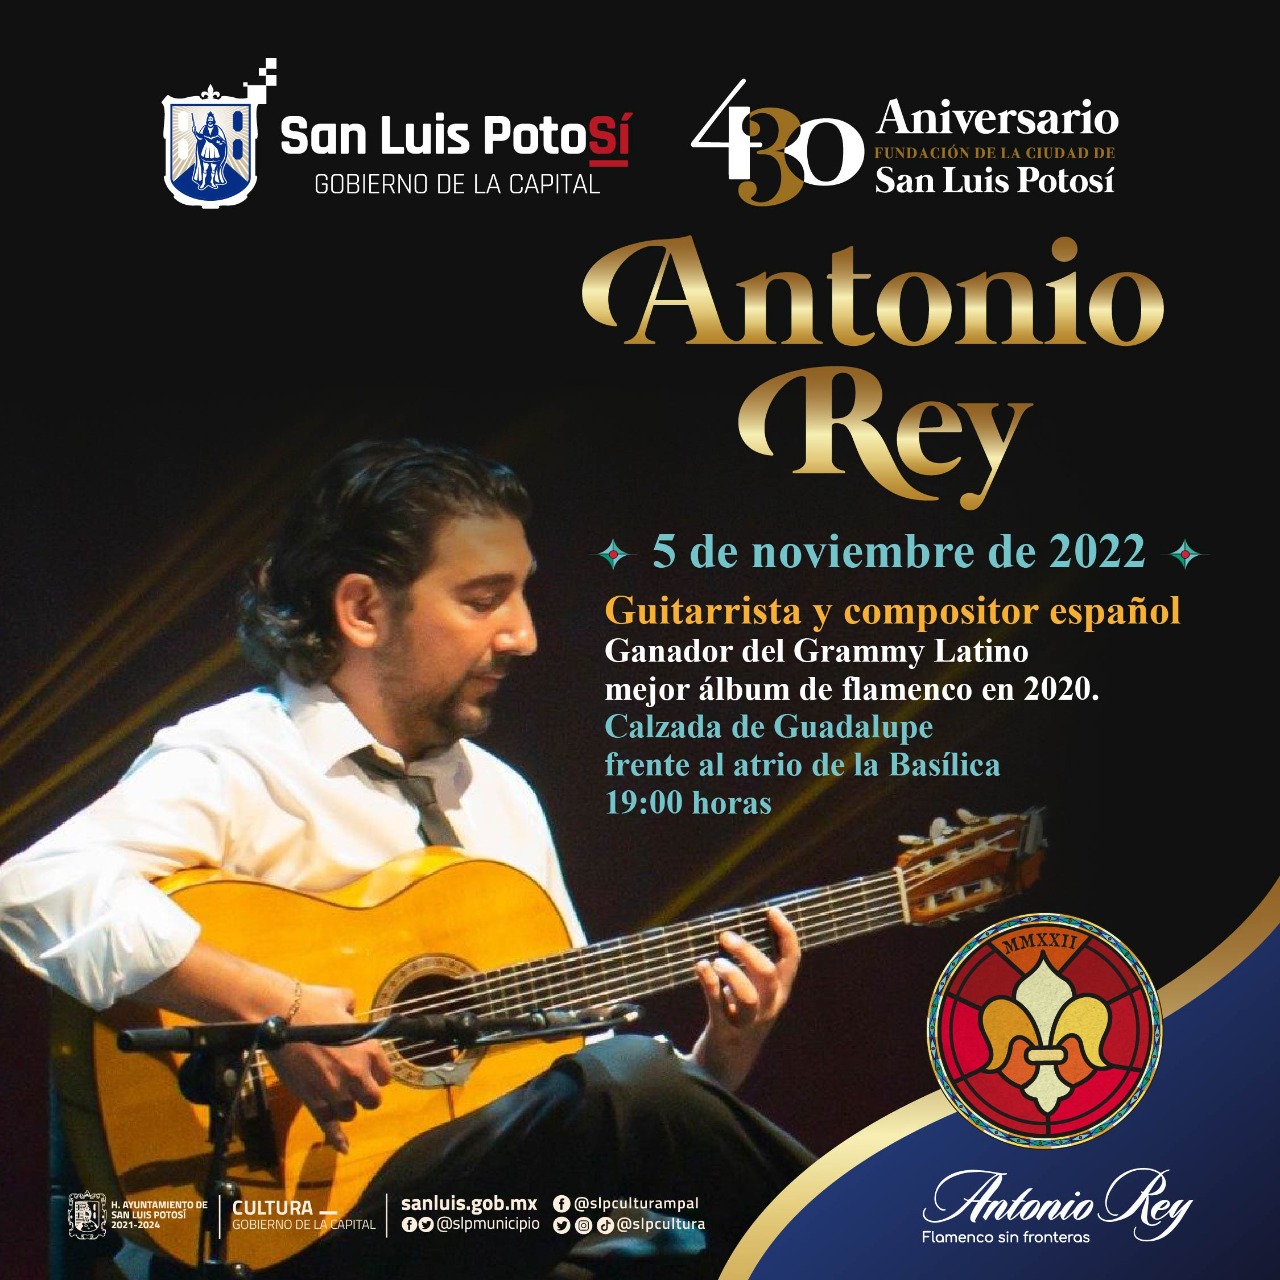 Cultura Municipal, invita al público en general a disfrutar del talento y virtuosismo del guitarrista Antonio Rey